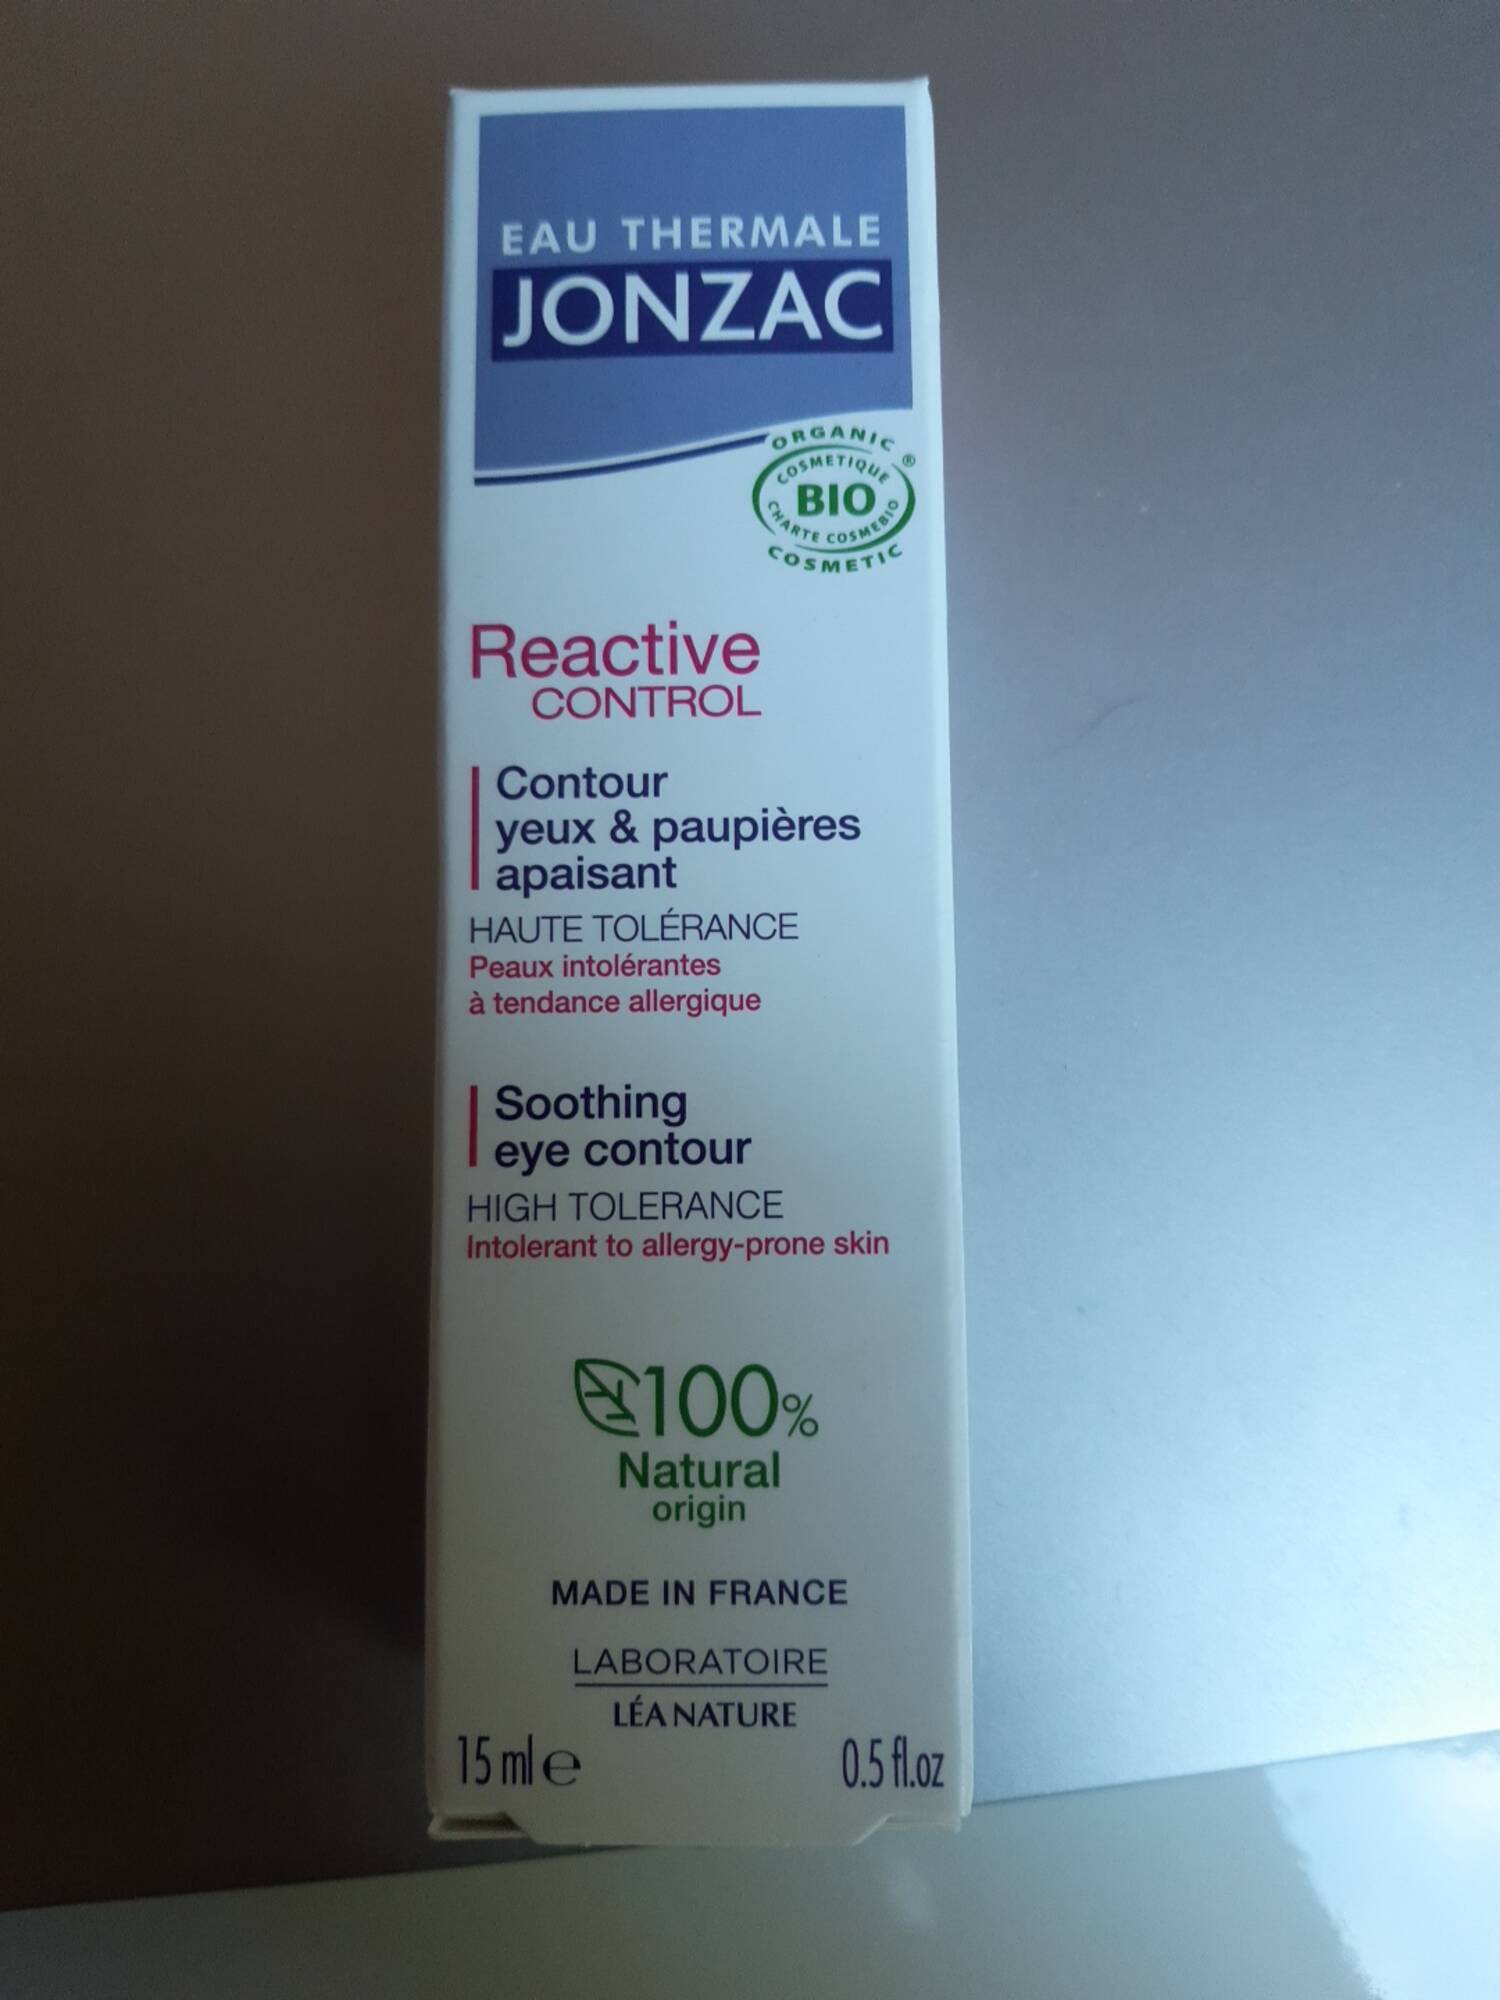 JONZAC - Reactive control  - Contour yeux & paupières apaisant